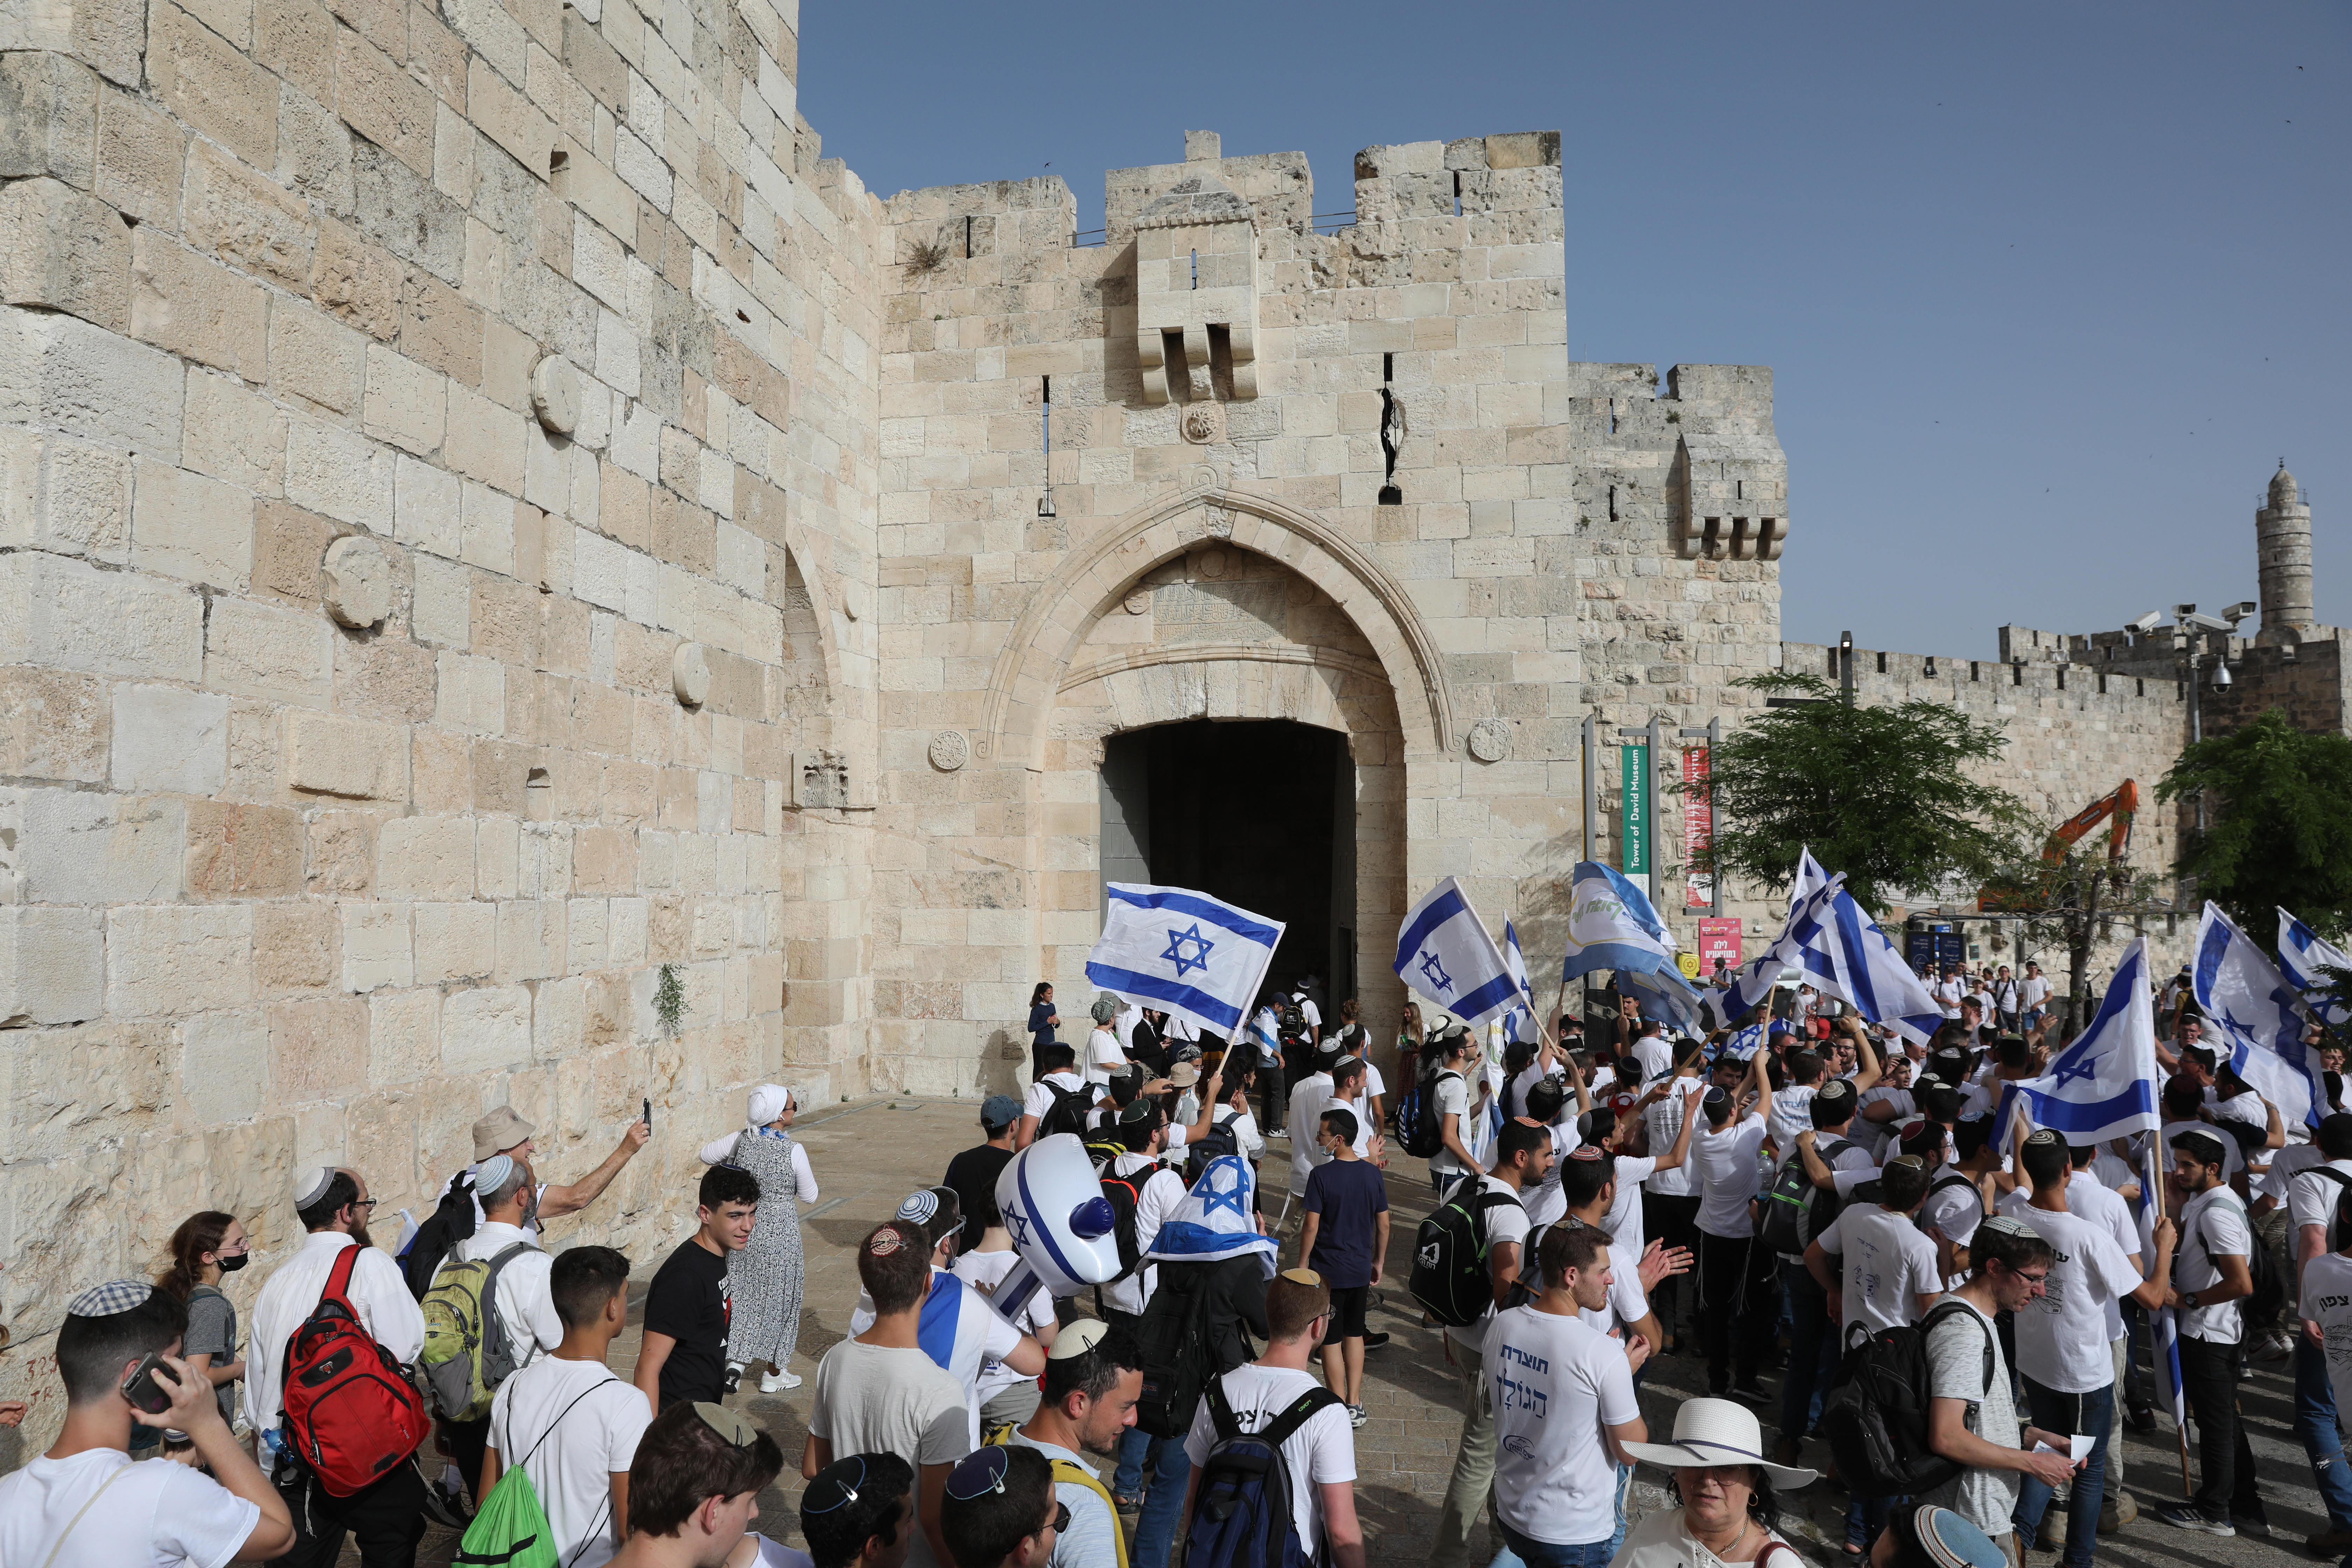 Los israelíes marchan con banderas nacionales celebrando el día de la liberación de Jerusalén en la puerta de Jaffa en la ciudad vieja de Jerusalén. (Foto Prensa Libre: EFE)